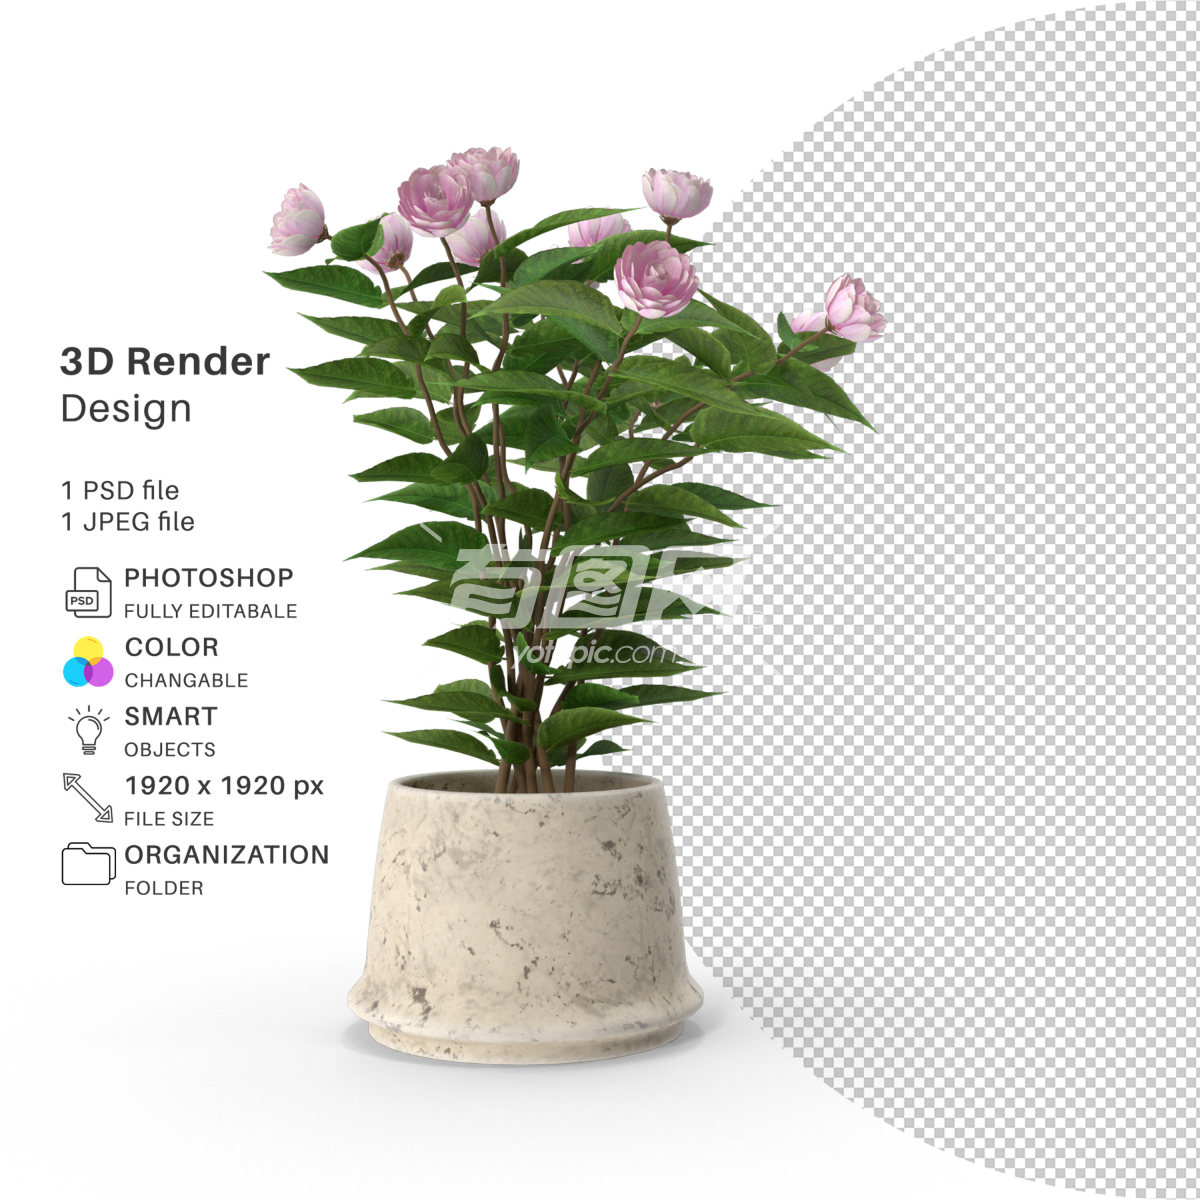 3D渲染的插花设计